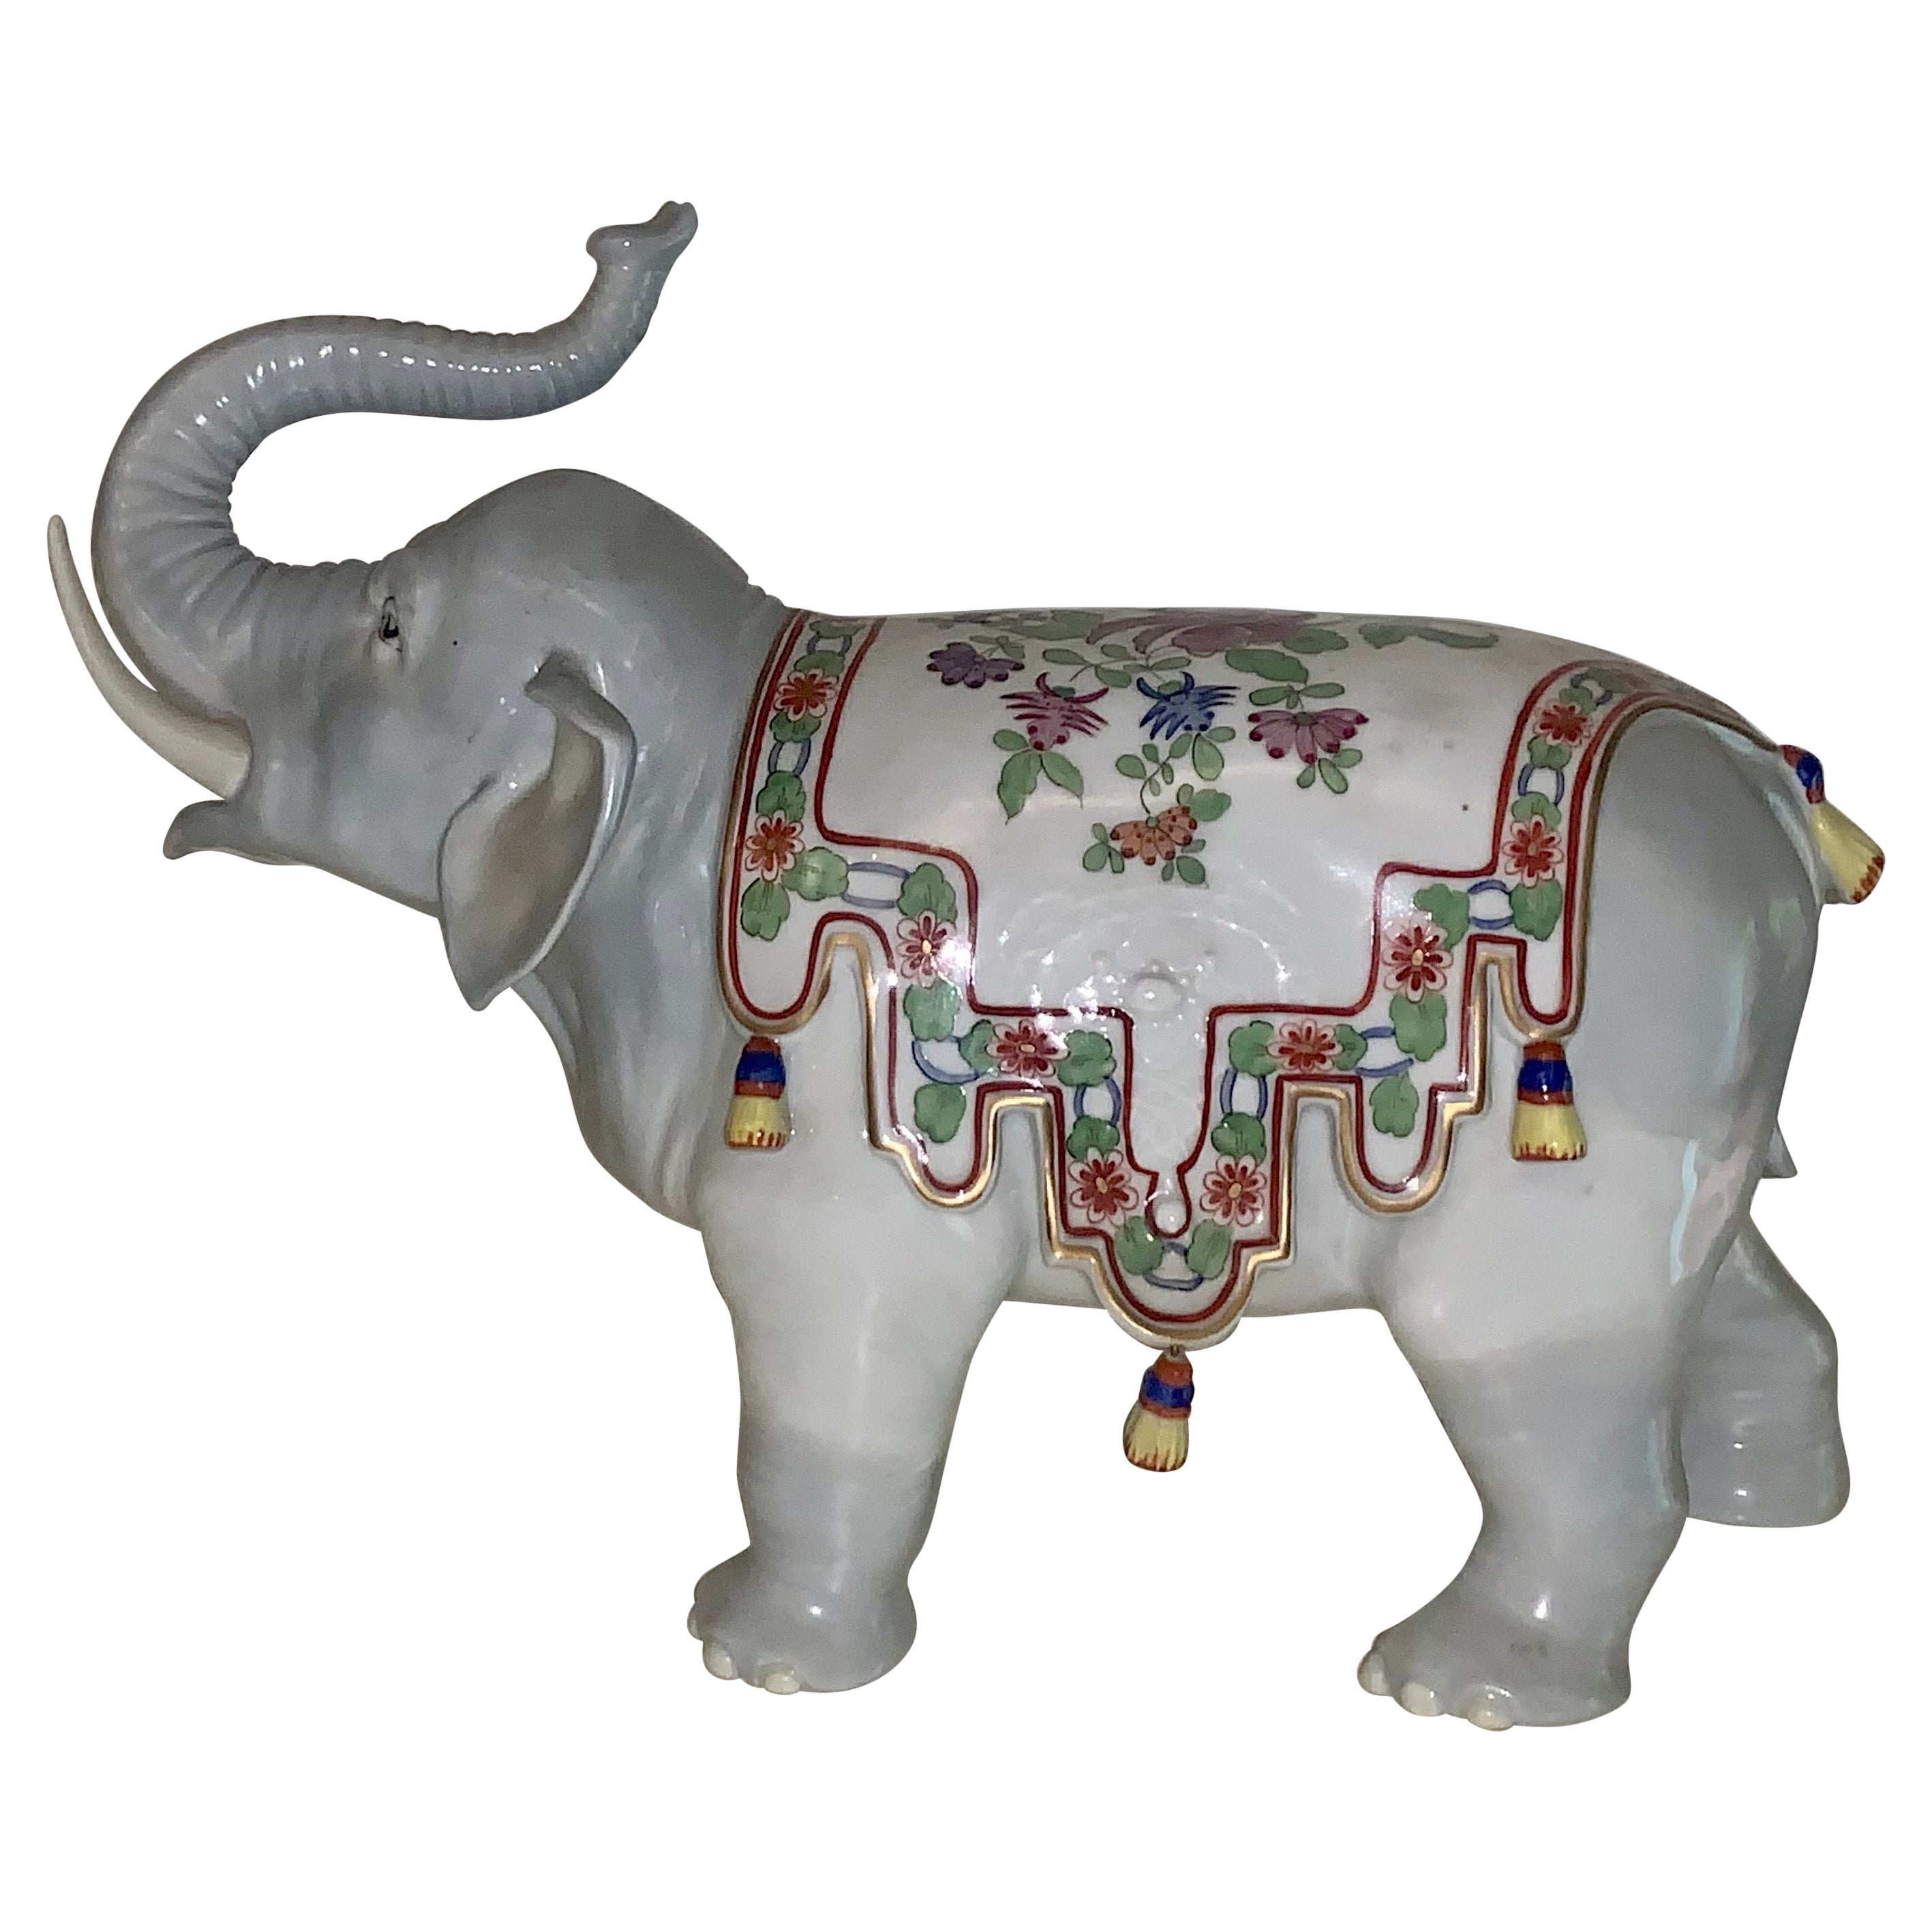 Sehr schöner, früher Carl Thieme Dresdener Porzellan-Elefanten von großer Größe